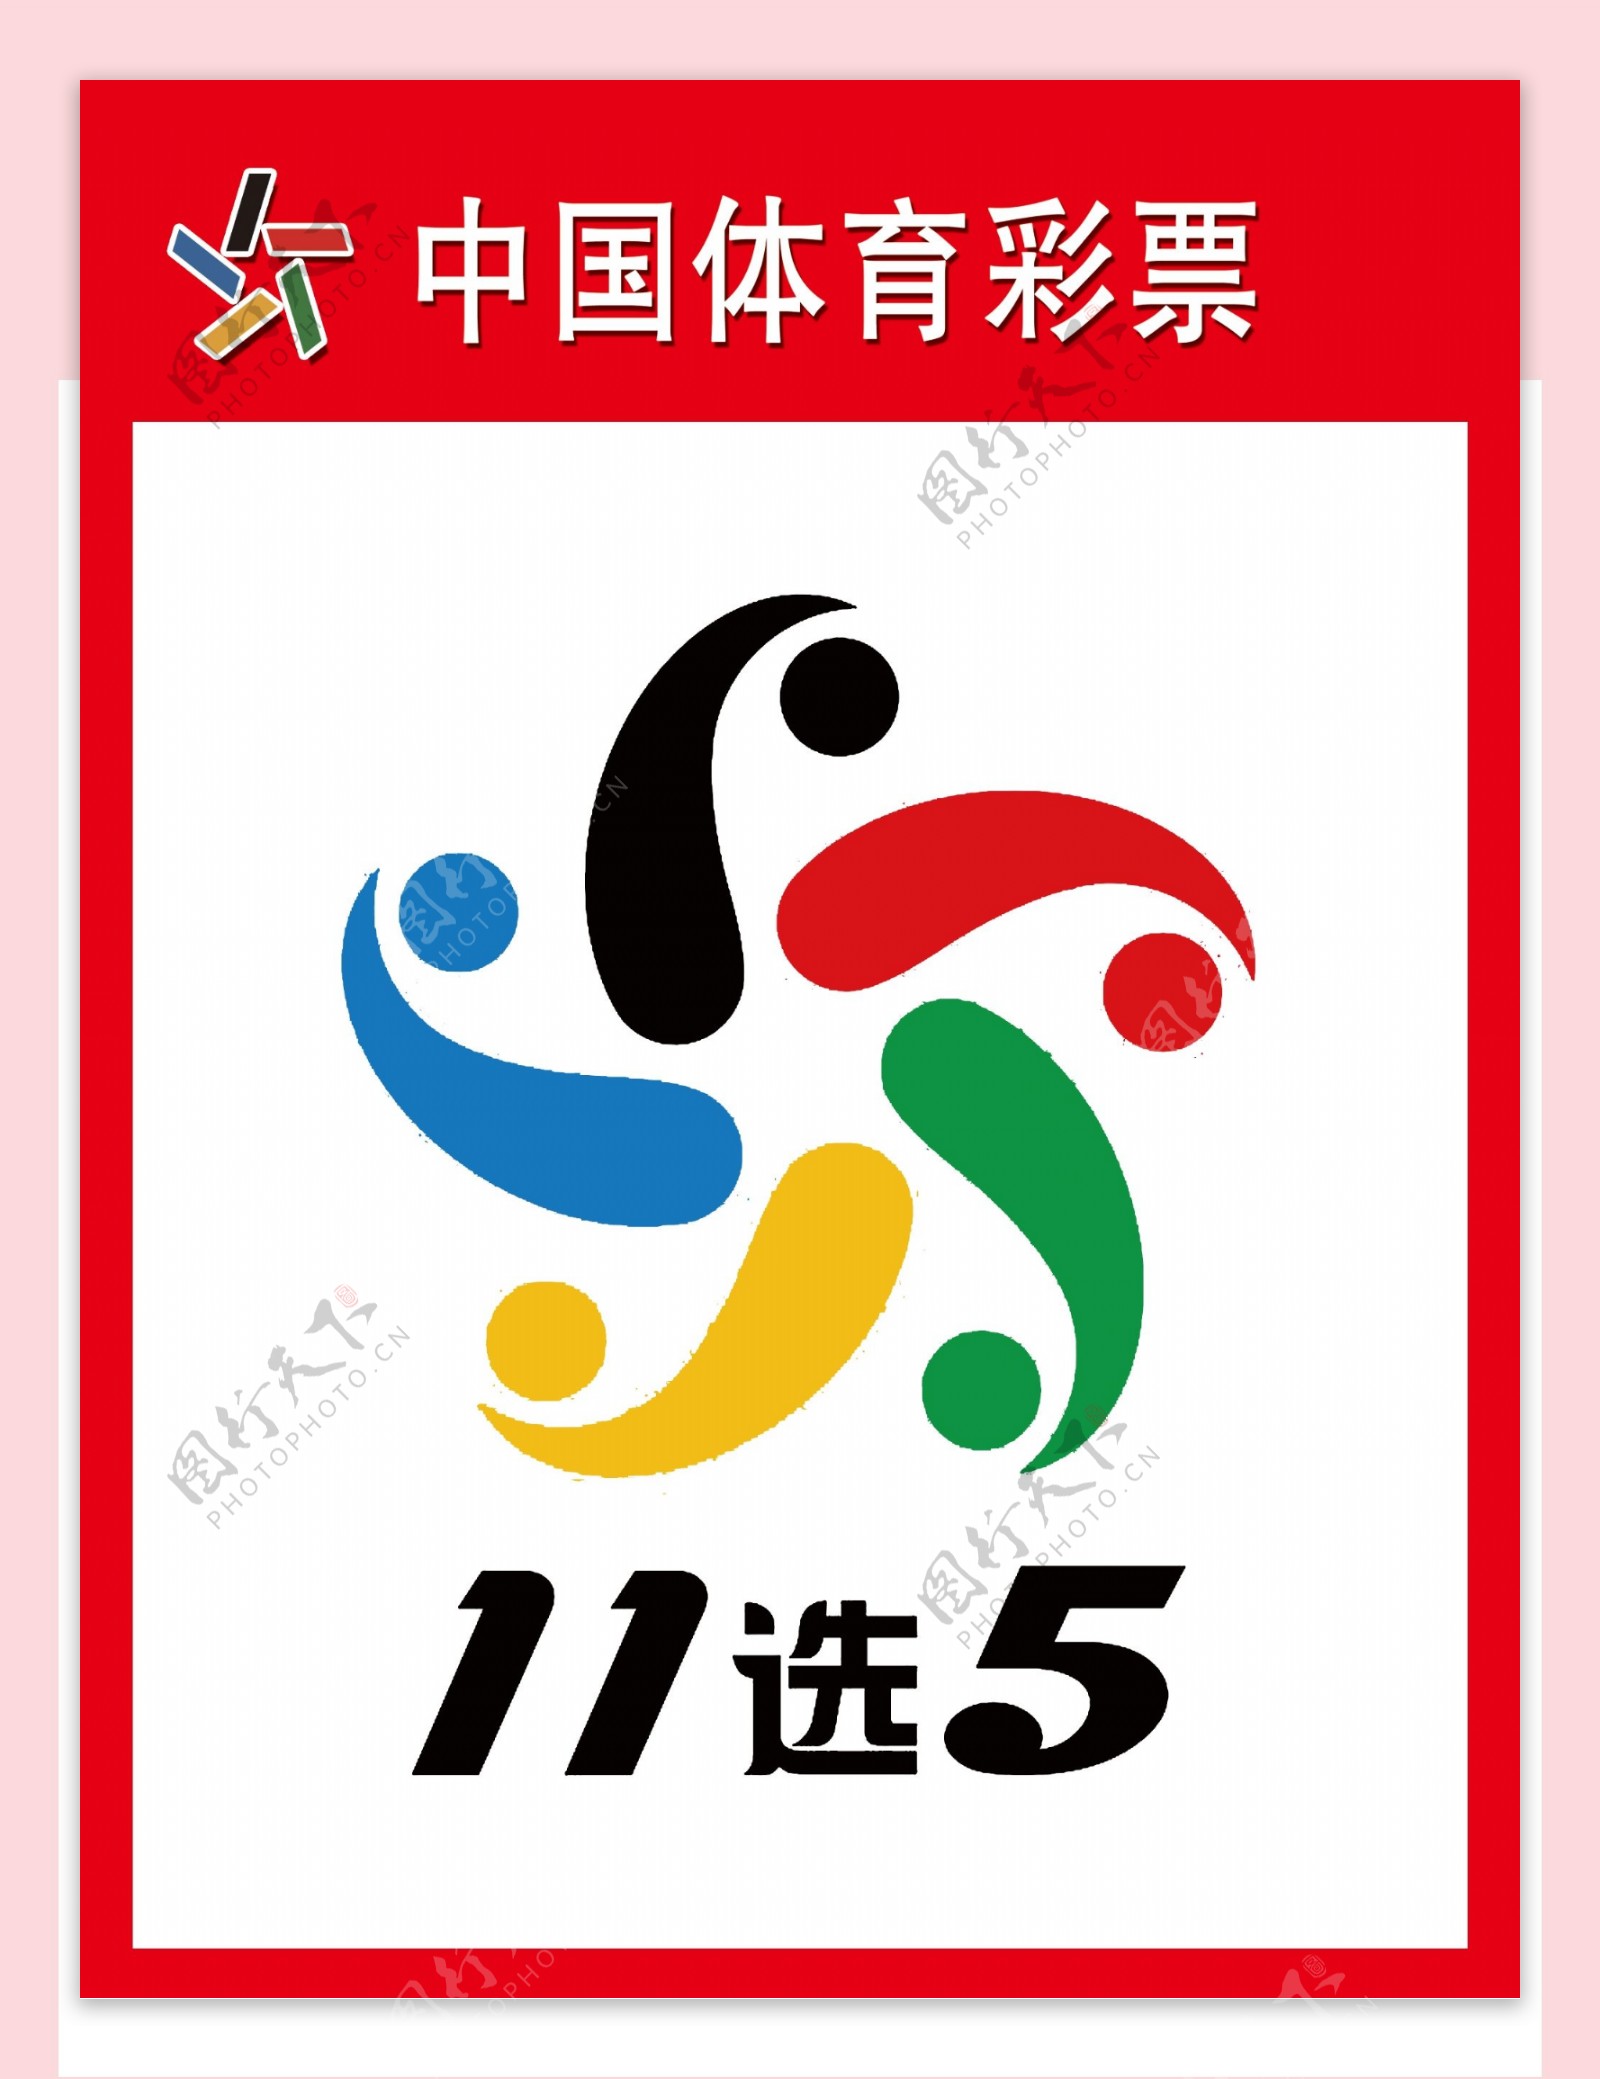 中国体育彩票11选5